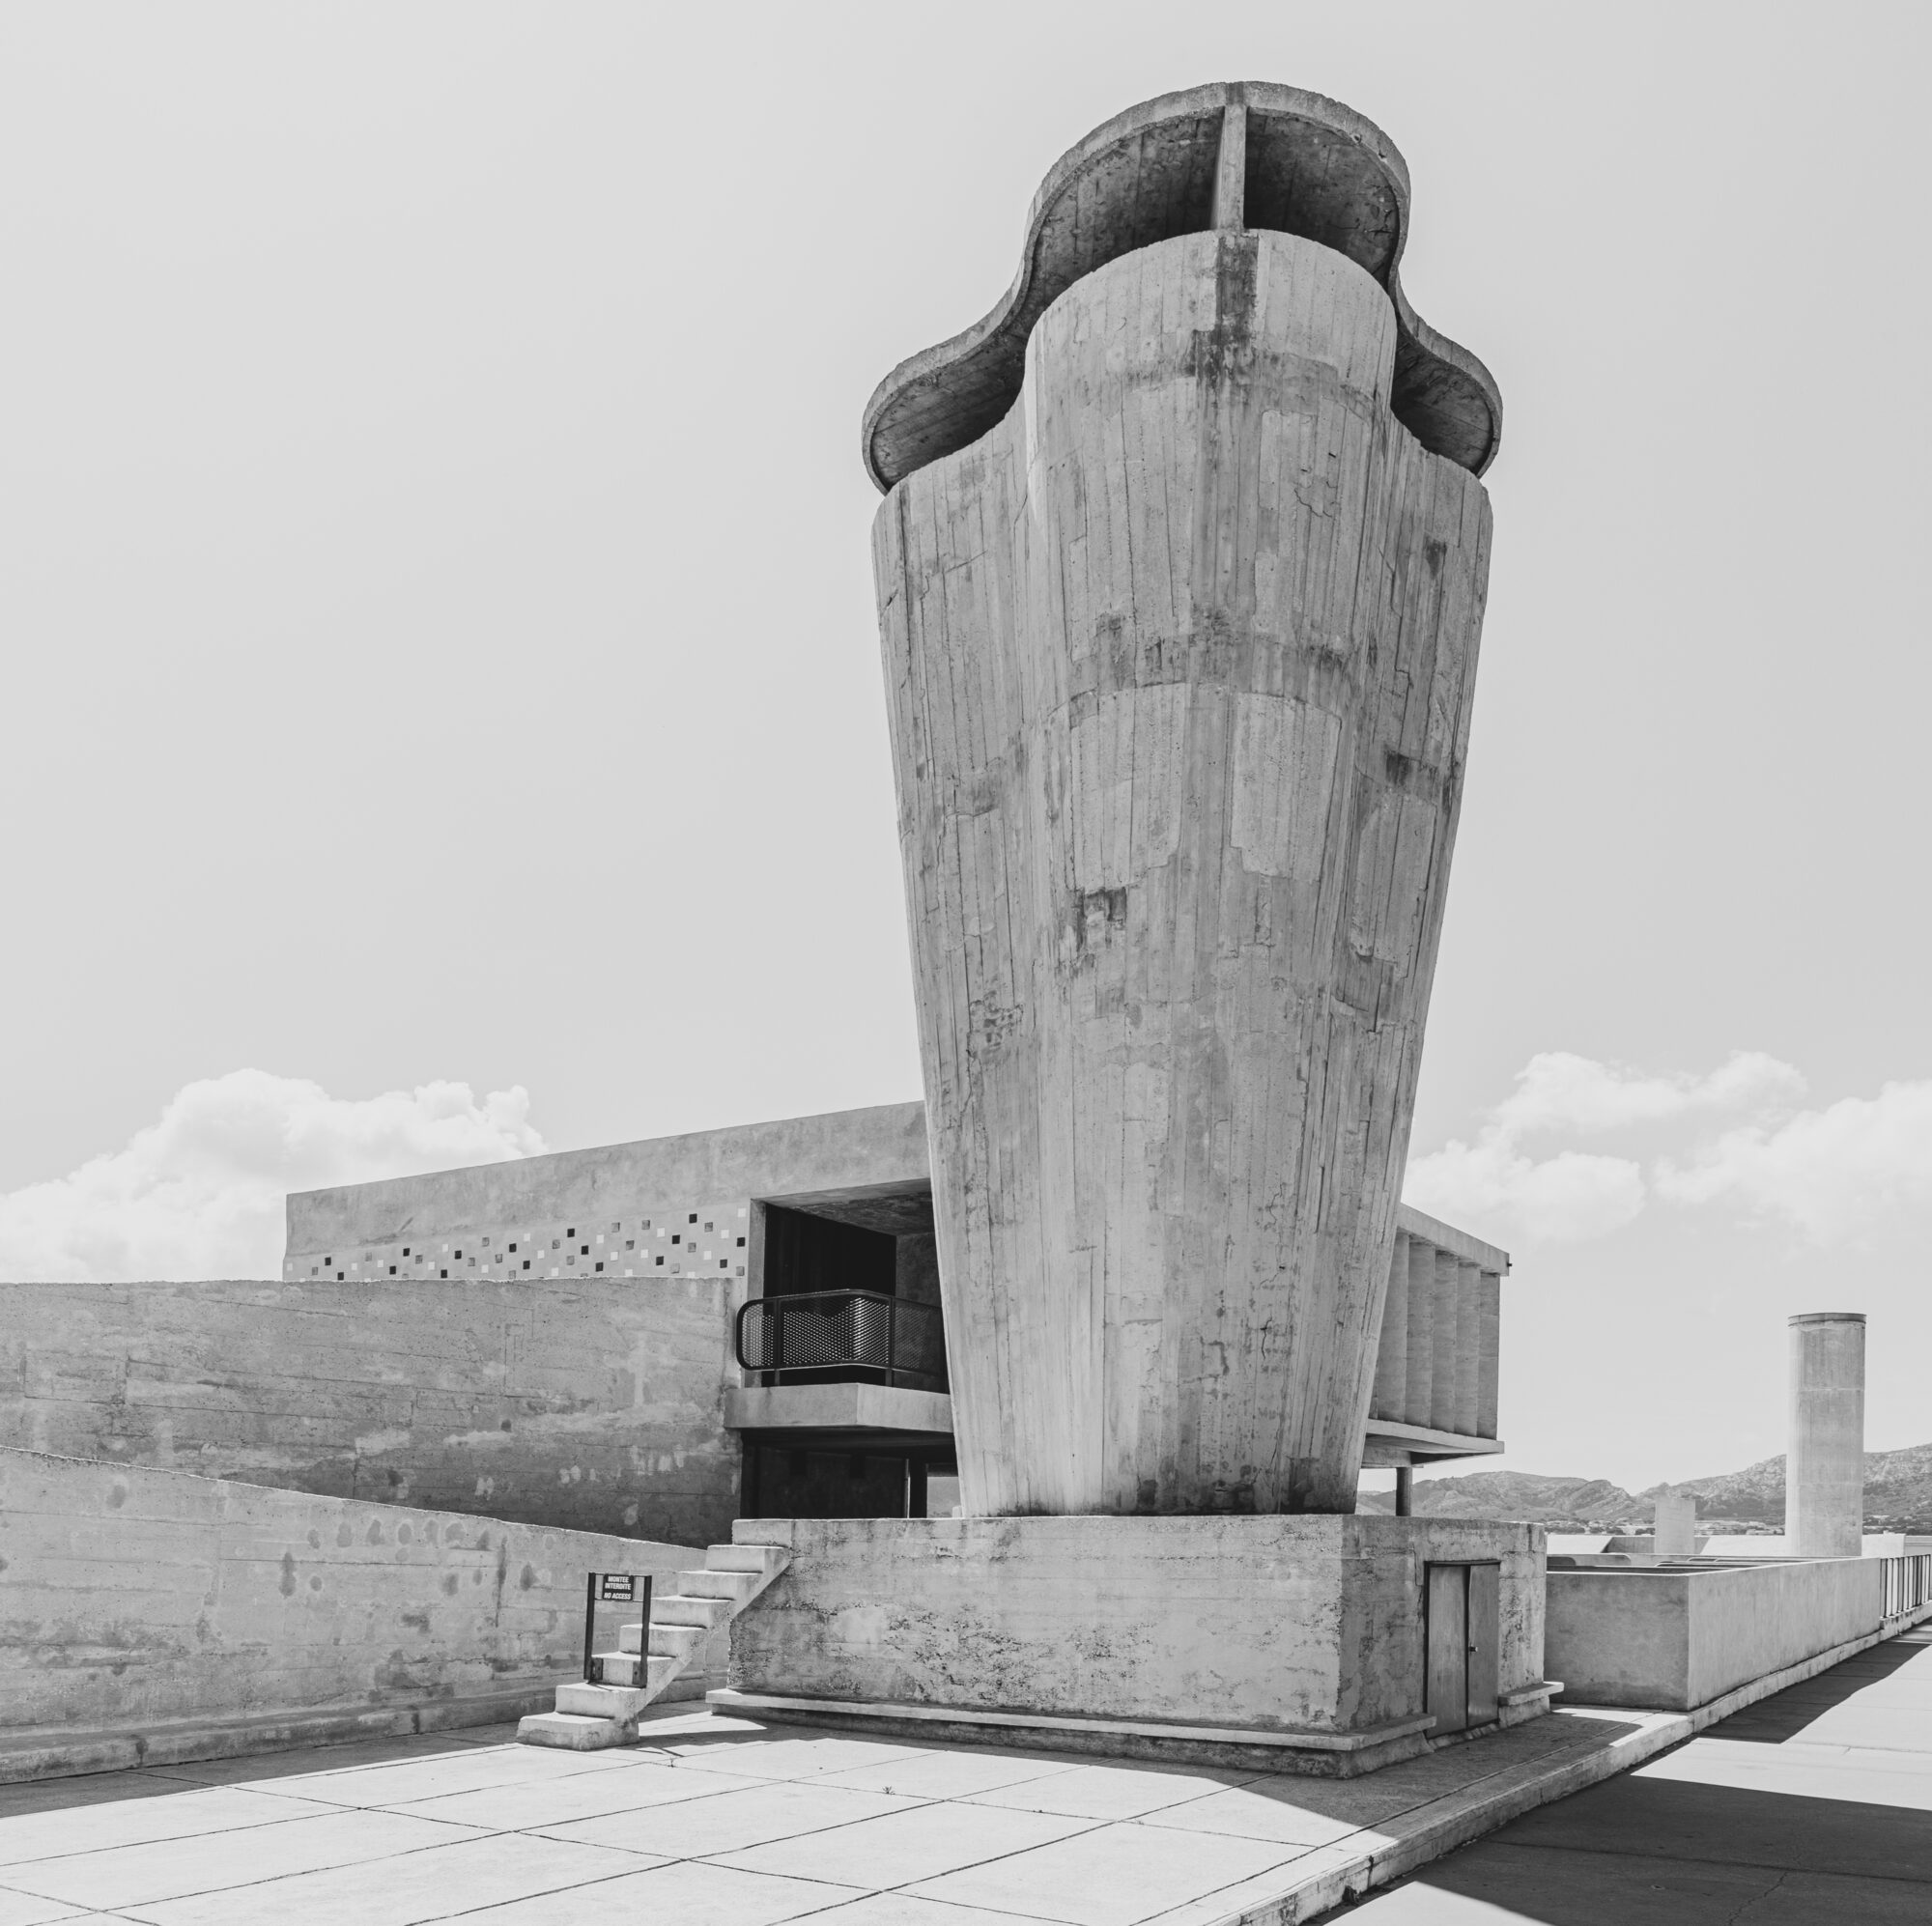 photographe d'architecture photographe d'architecture, vue d'ensemble de la cité radieuse de Le Corbusier par le photographe Christophe Levet